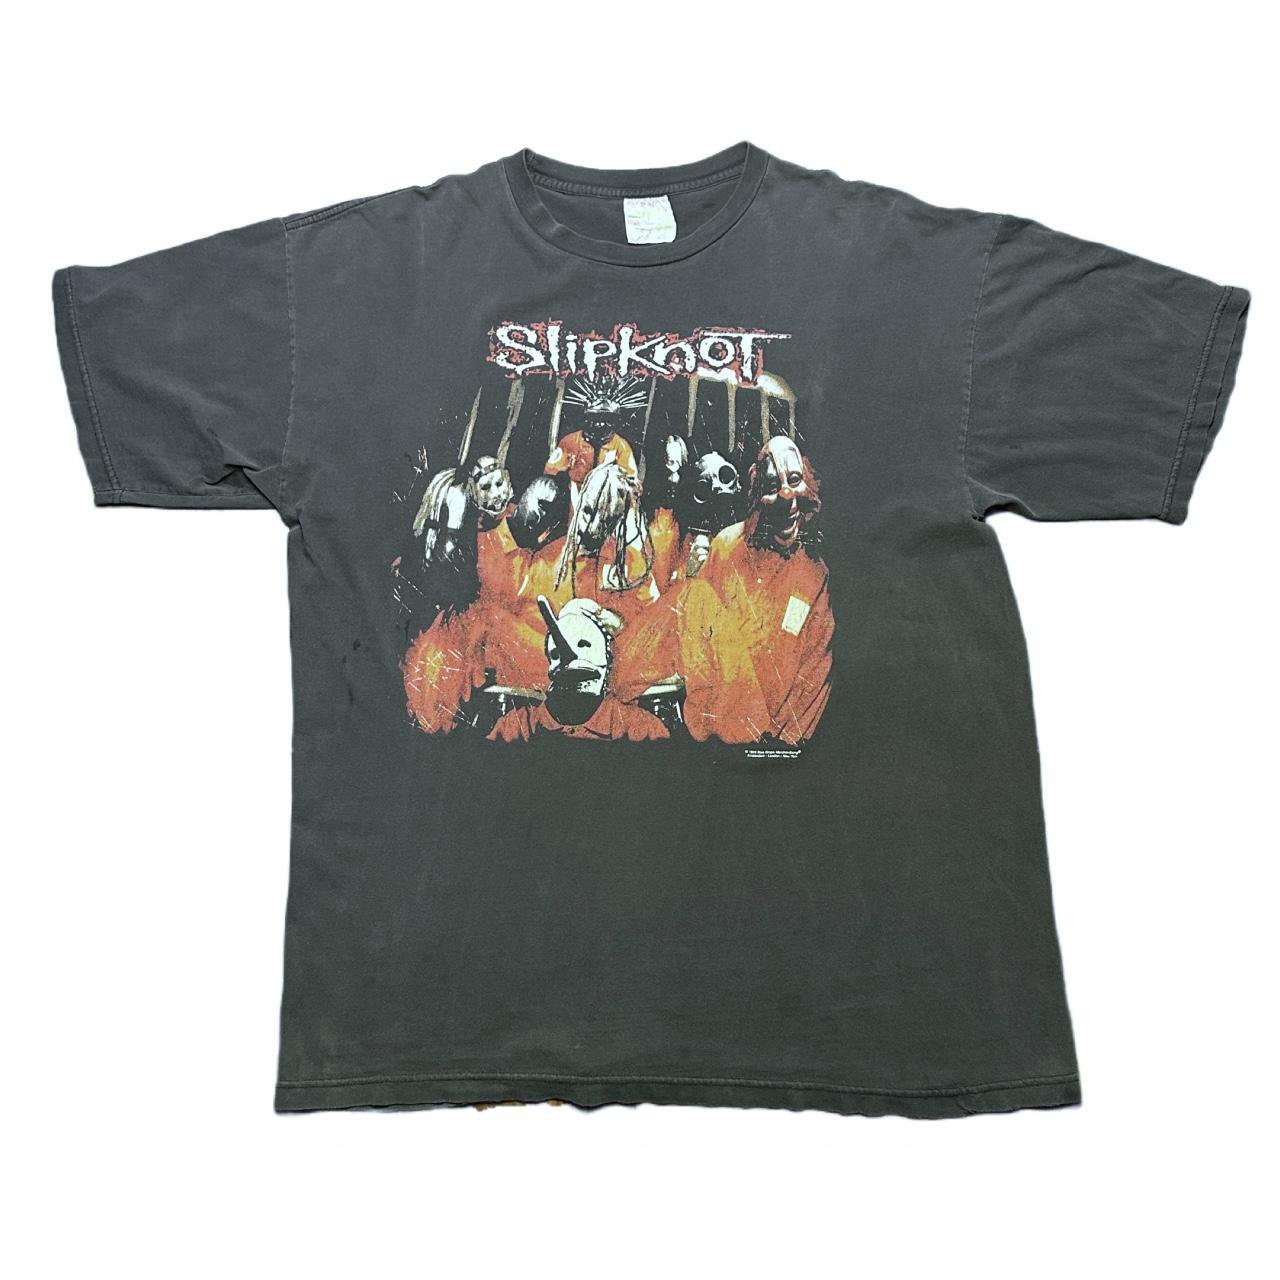 Vintage 1999 Slipknot Self-titled Shirt XL The... - Depop